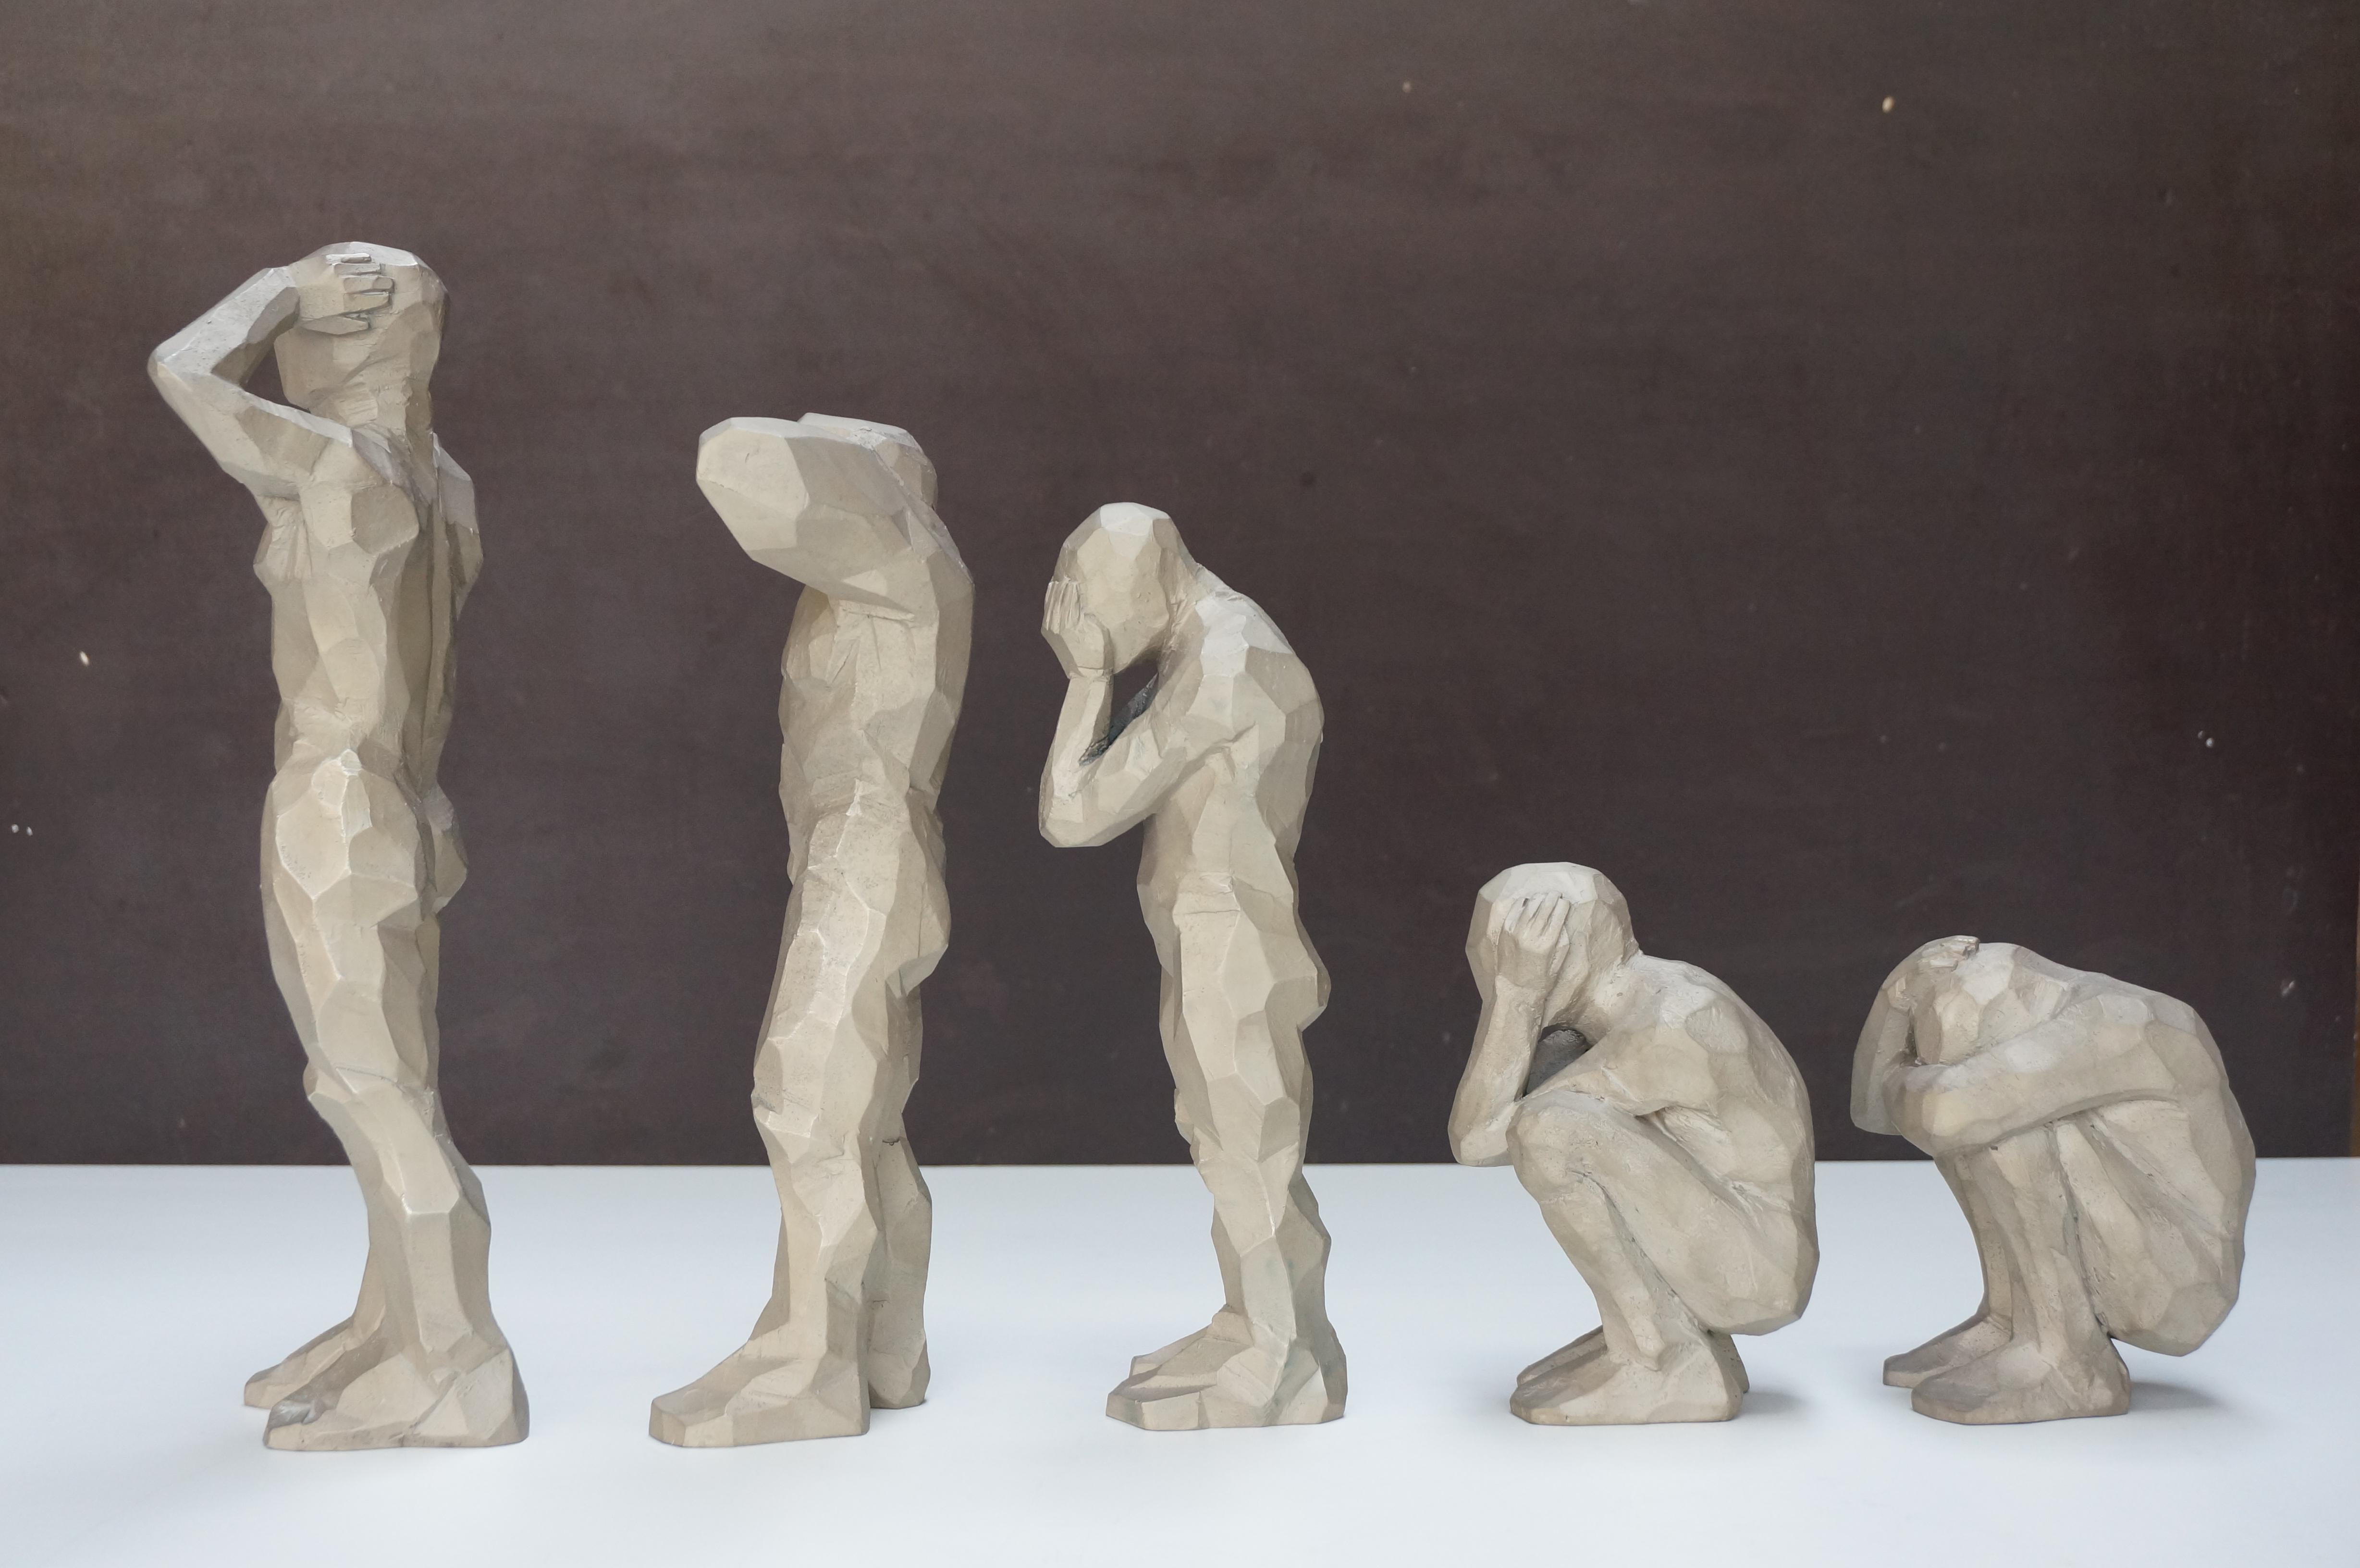 Sculpture en bronze Politique de l'Autruche ( Politiquestrich Politics) de 5 personnages  - Or Figurative Sculpture par Cyrille André